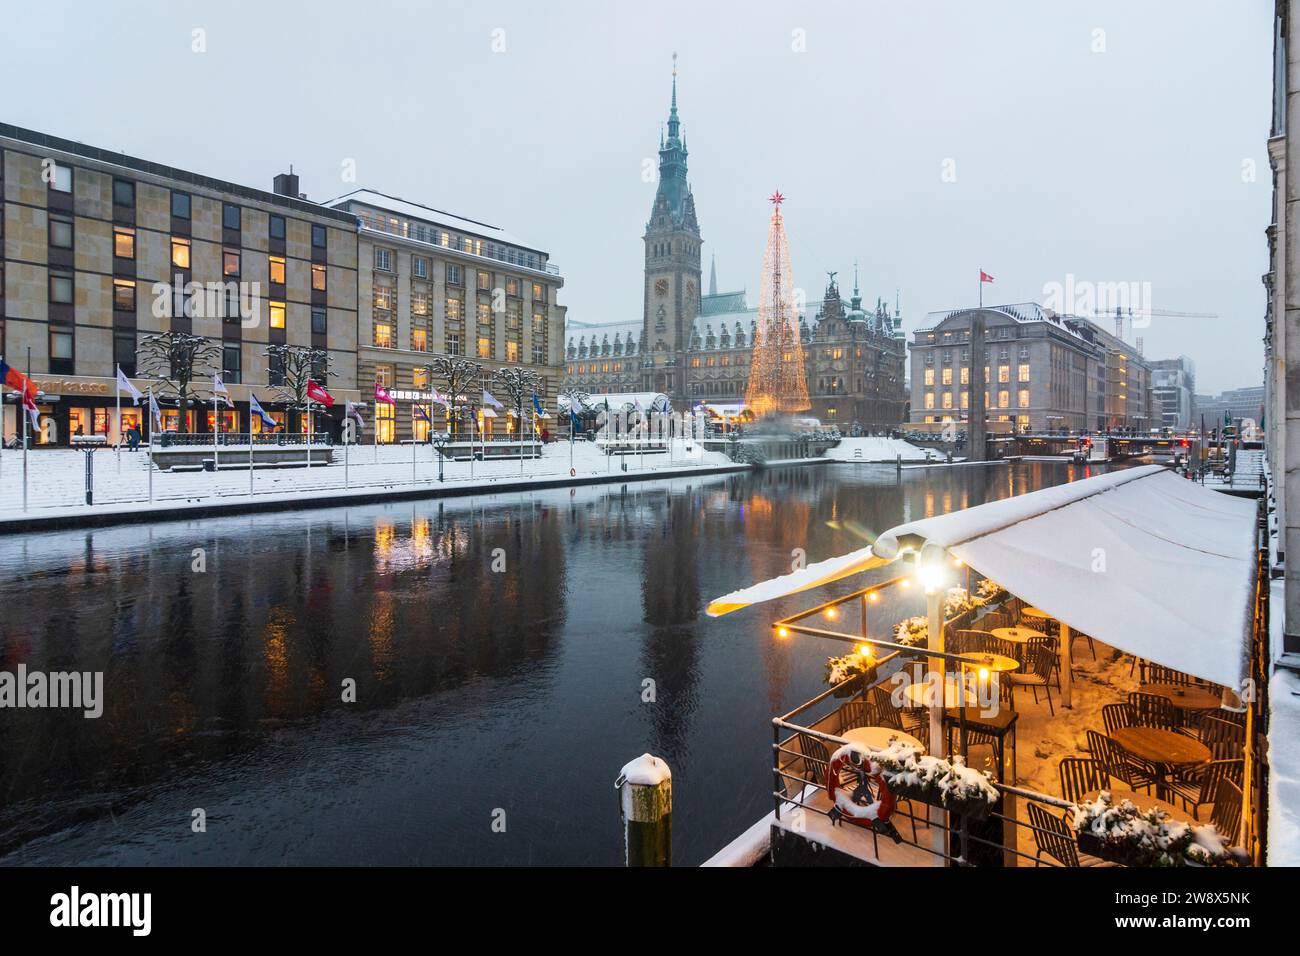 Hambourg : marché de Noël de Hambourg en face de la mairie, décoration de Noël, stands de vente, gens, chutes de neige, canal Kleine Alster à , Hambourg, Germa Banque D'Images